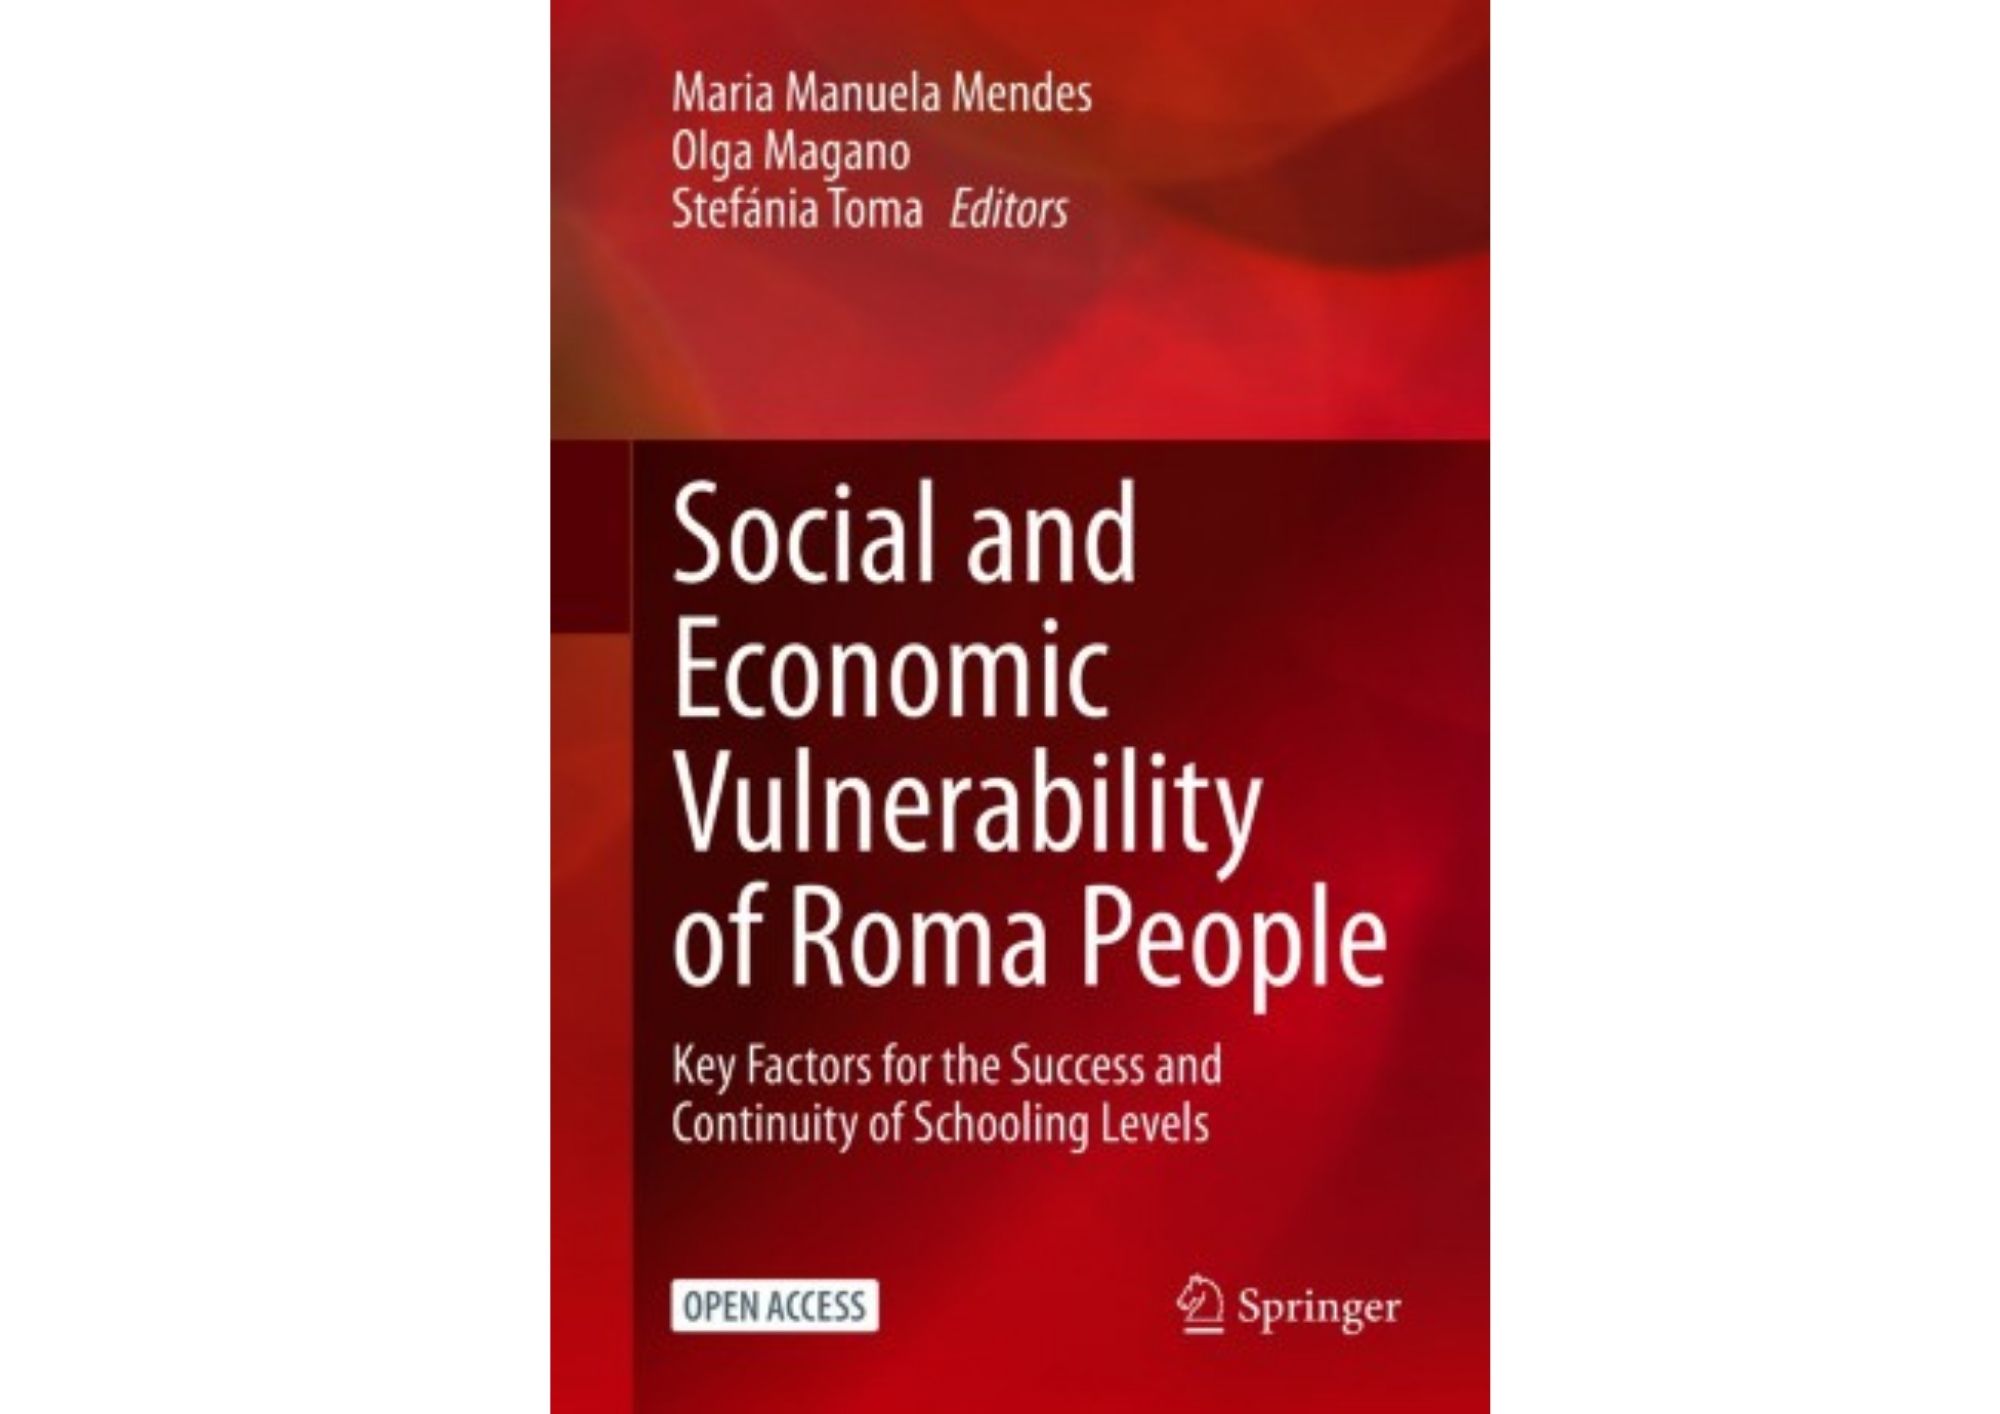 Professora Maria Manuela Mendes é co-autora da publicação “Social and Economic Vulnerability of Roma People, publicada pela Springer 